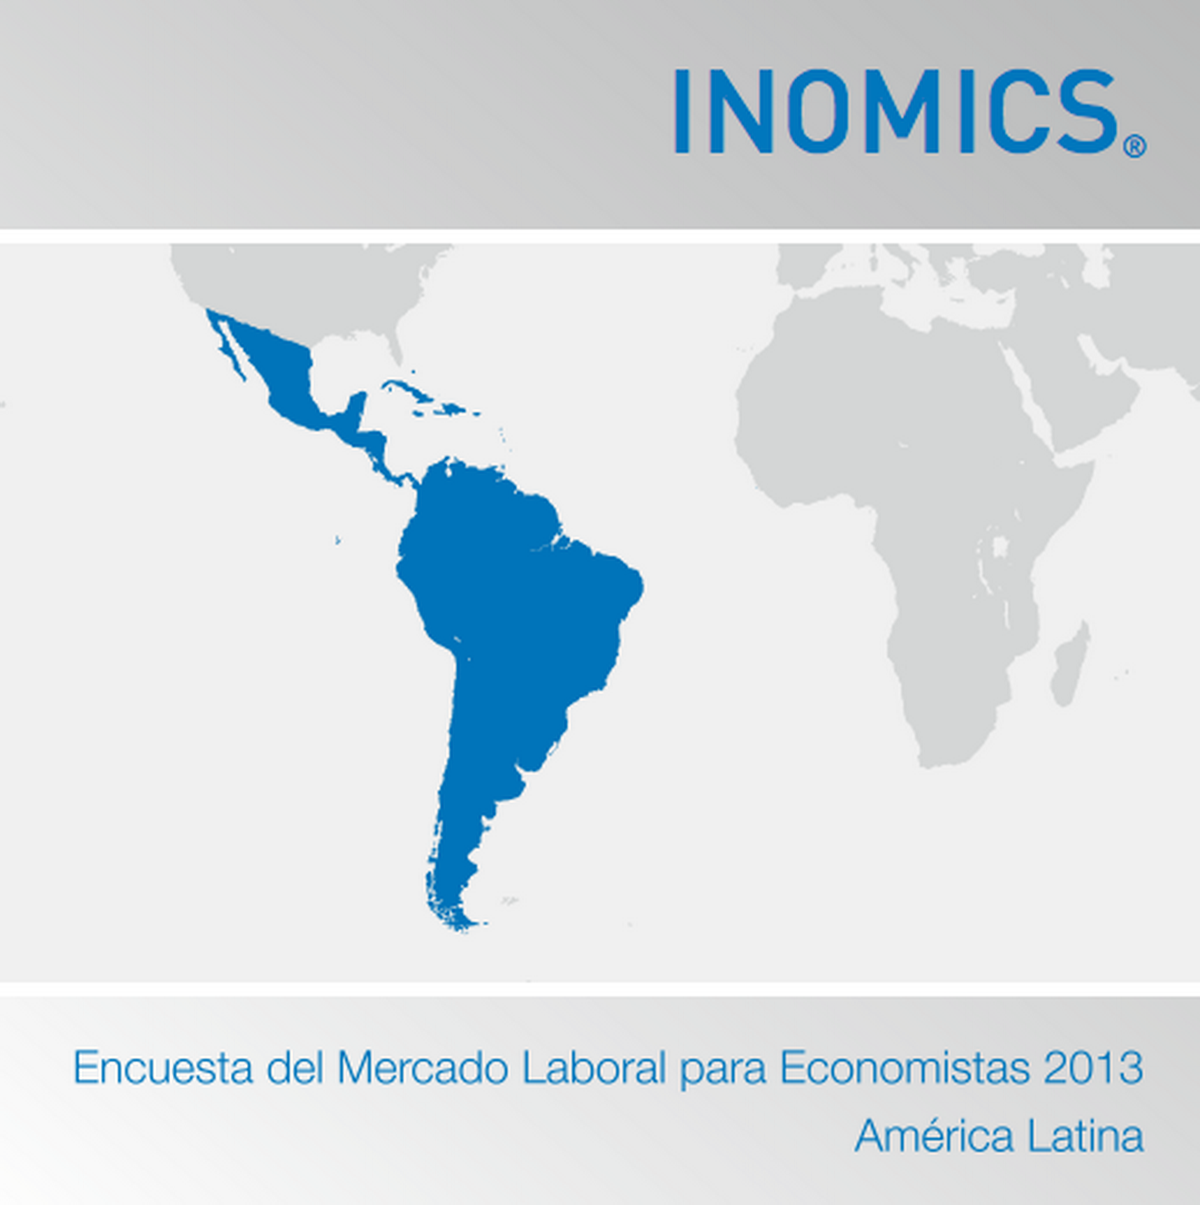 Encuesta del Mercado Laboral para Economistas 2013 (América Latina)